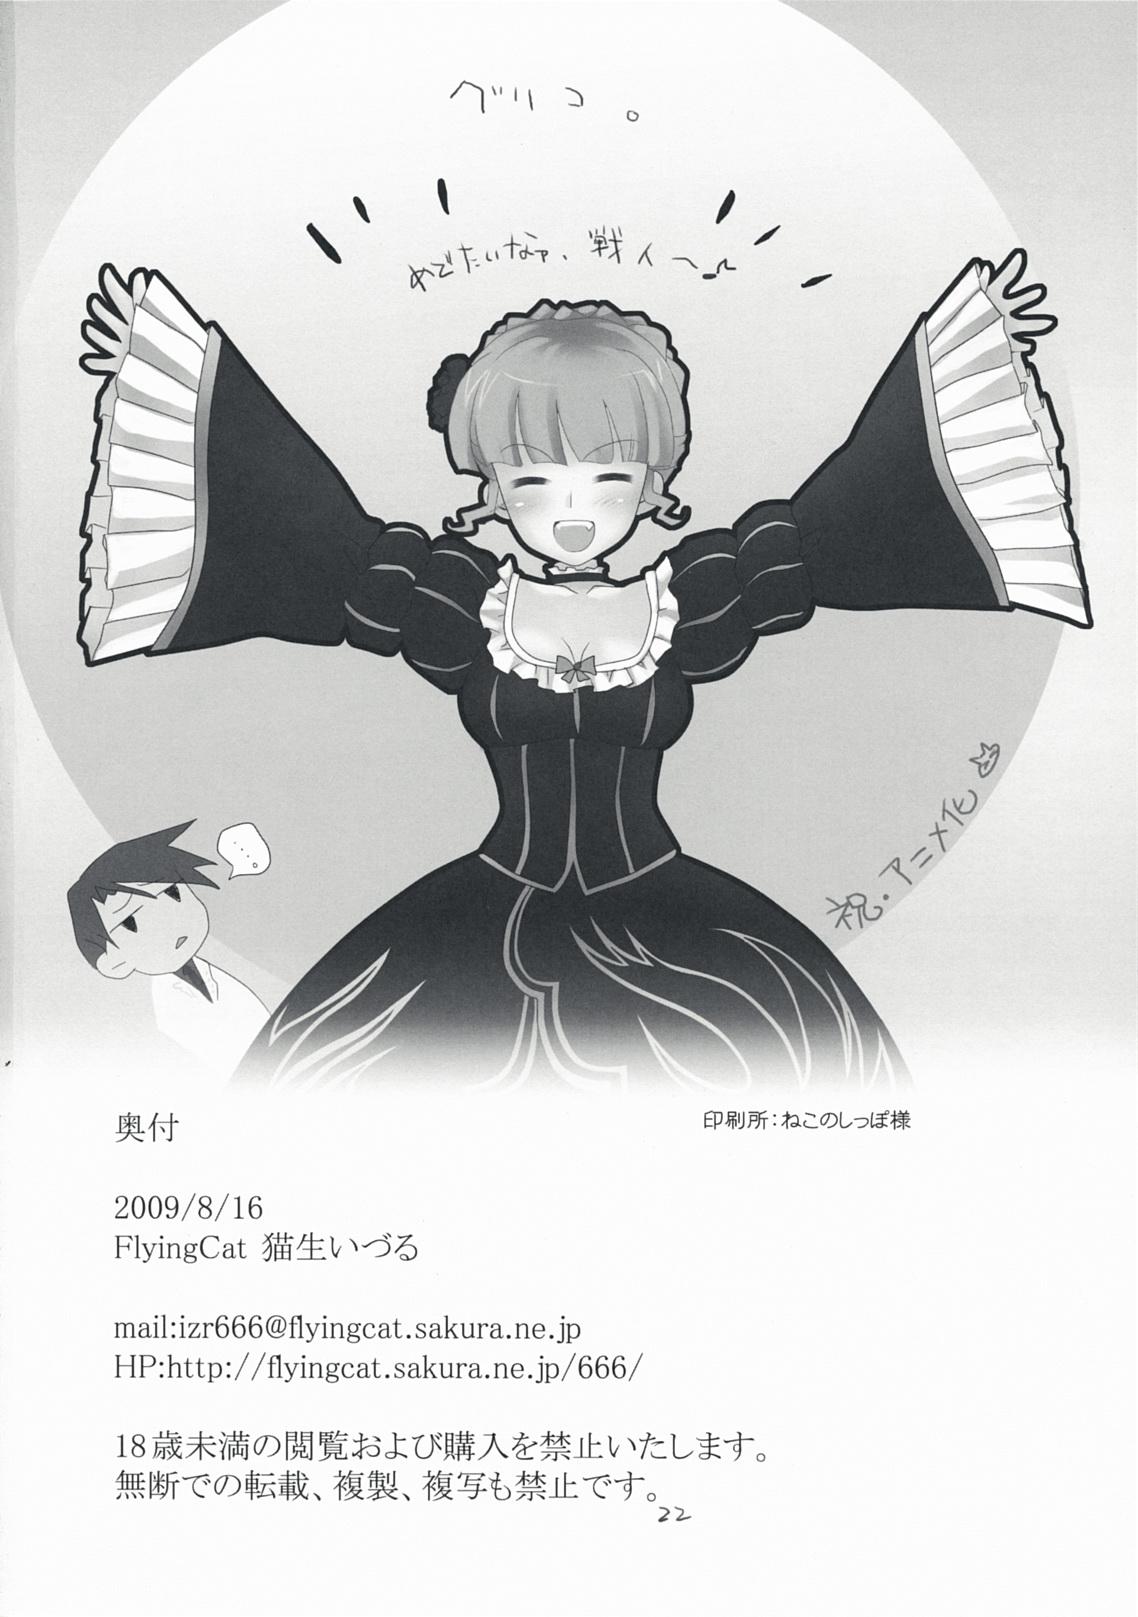 Leche The Queen Of Nightmare - Umineko no naku koro ni Backshots - Page 22